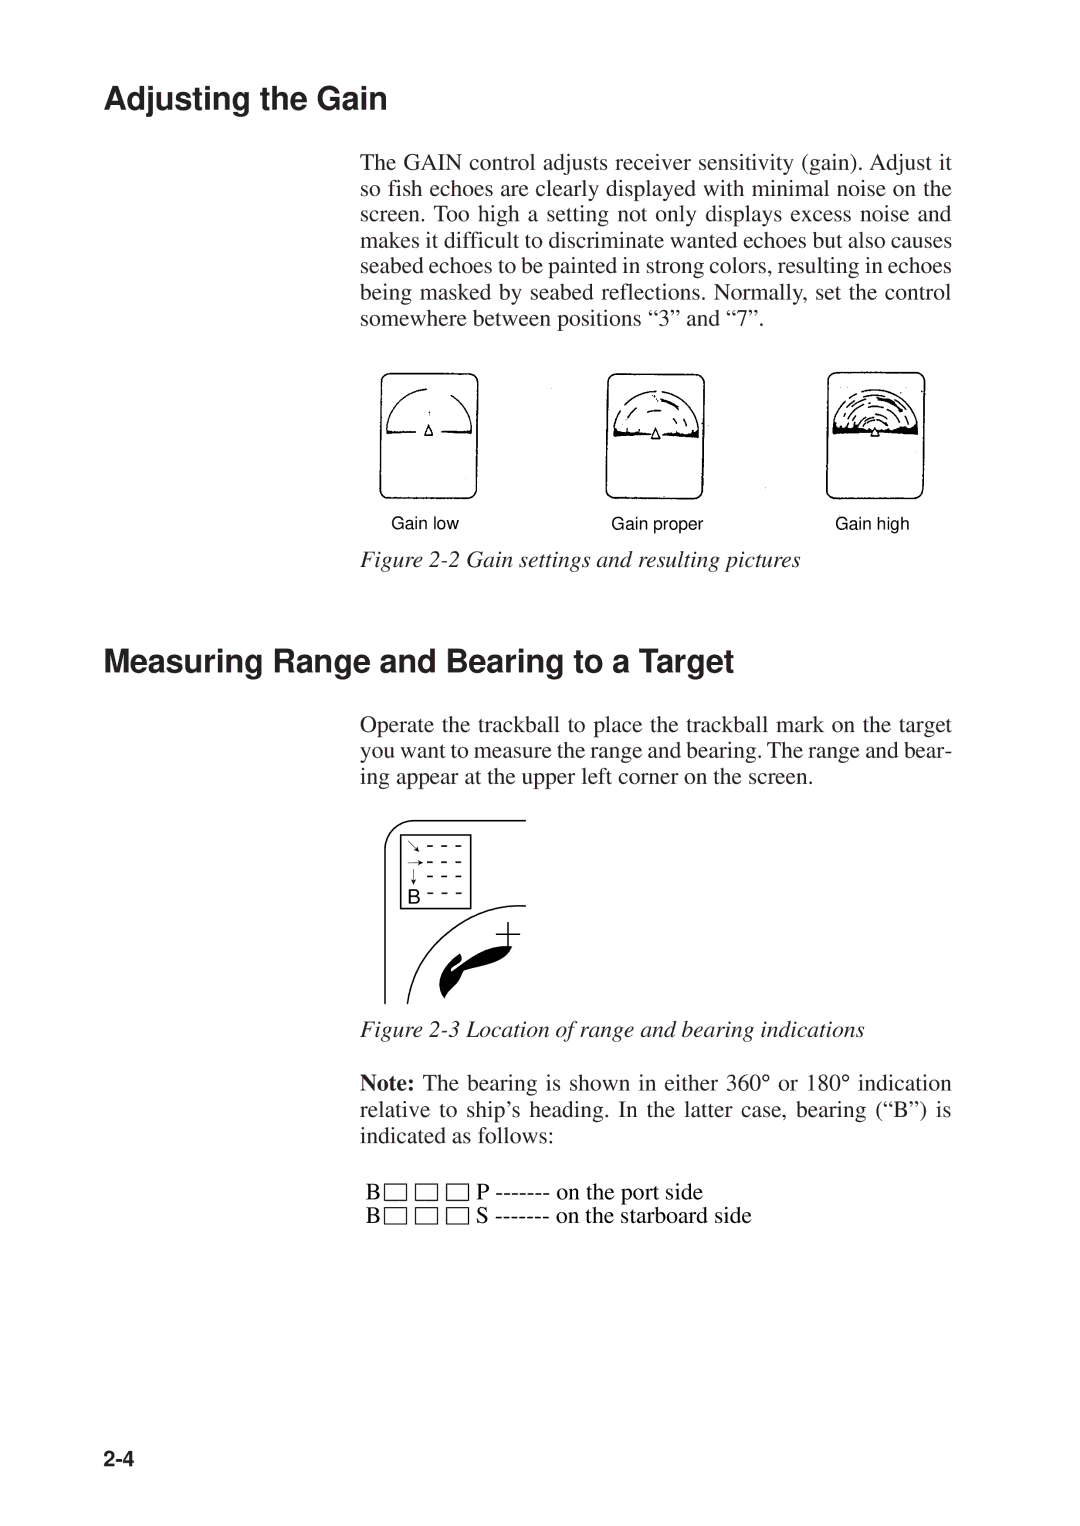 Furuno MODEL CSH-73 manual Adjusting the Gain, Measuring Range and Bearing to a Target 